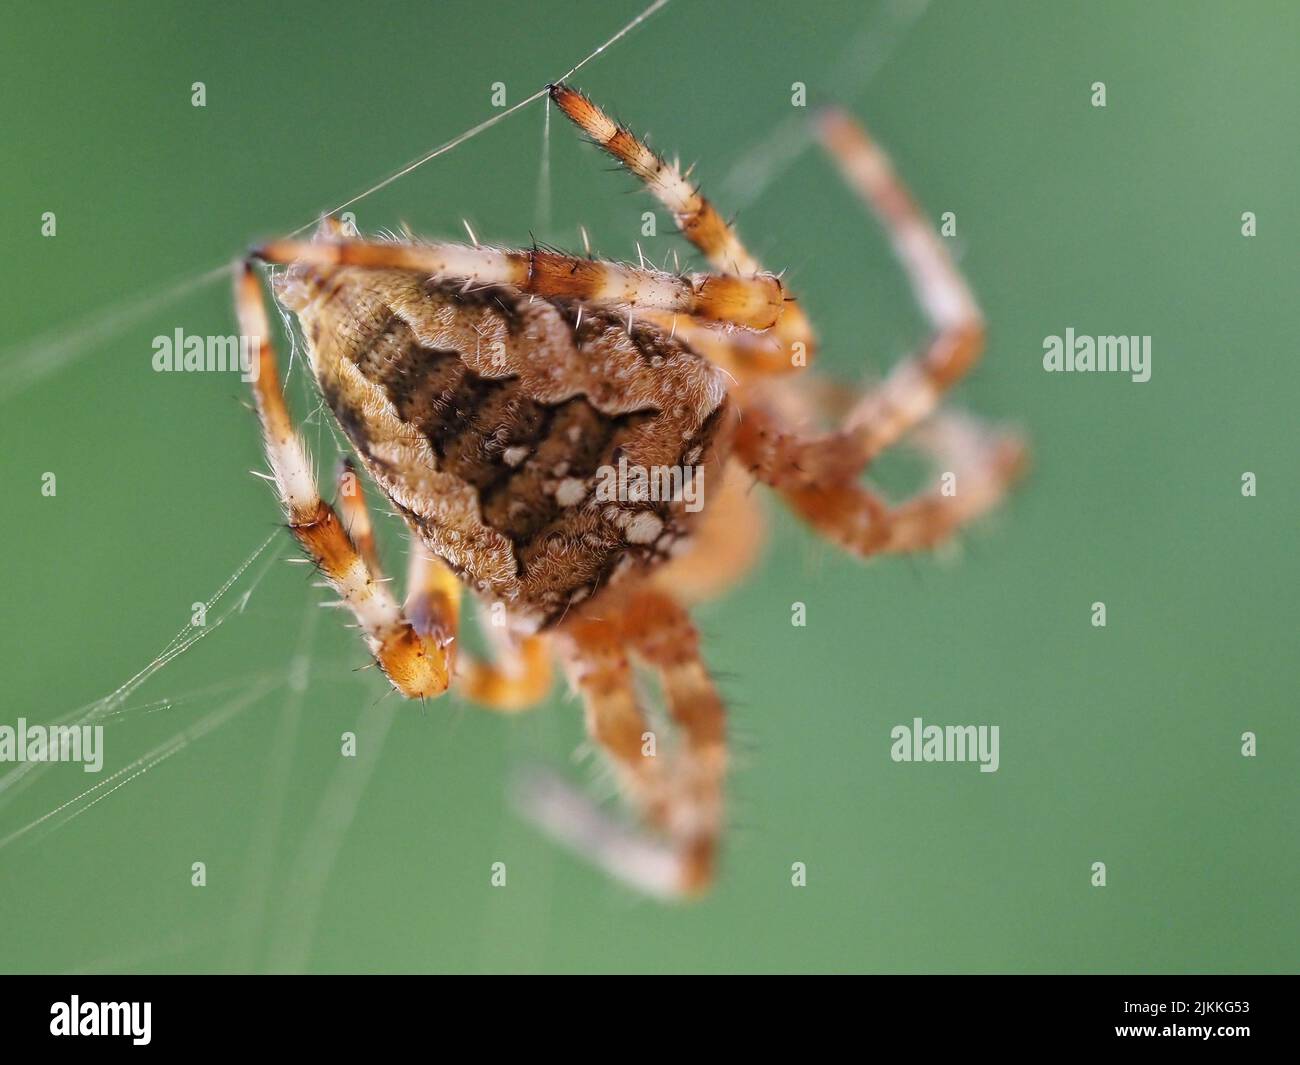 Nahaufnahme einer europäischen Gartenspinne, die auf einem verschwommenen grünen Hintergrund am Spinnennetz hängt Stockfoto